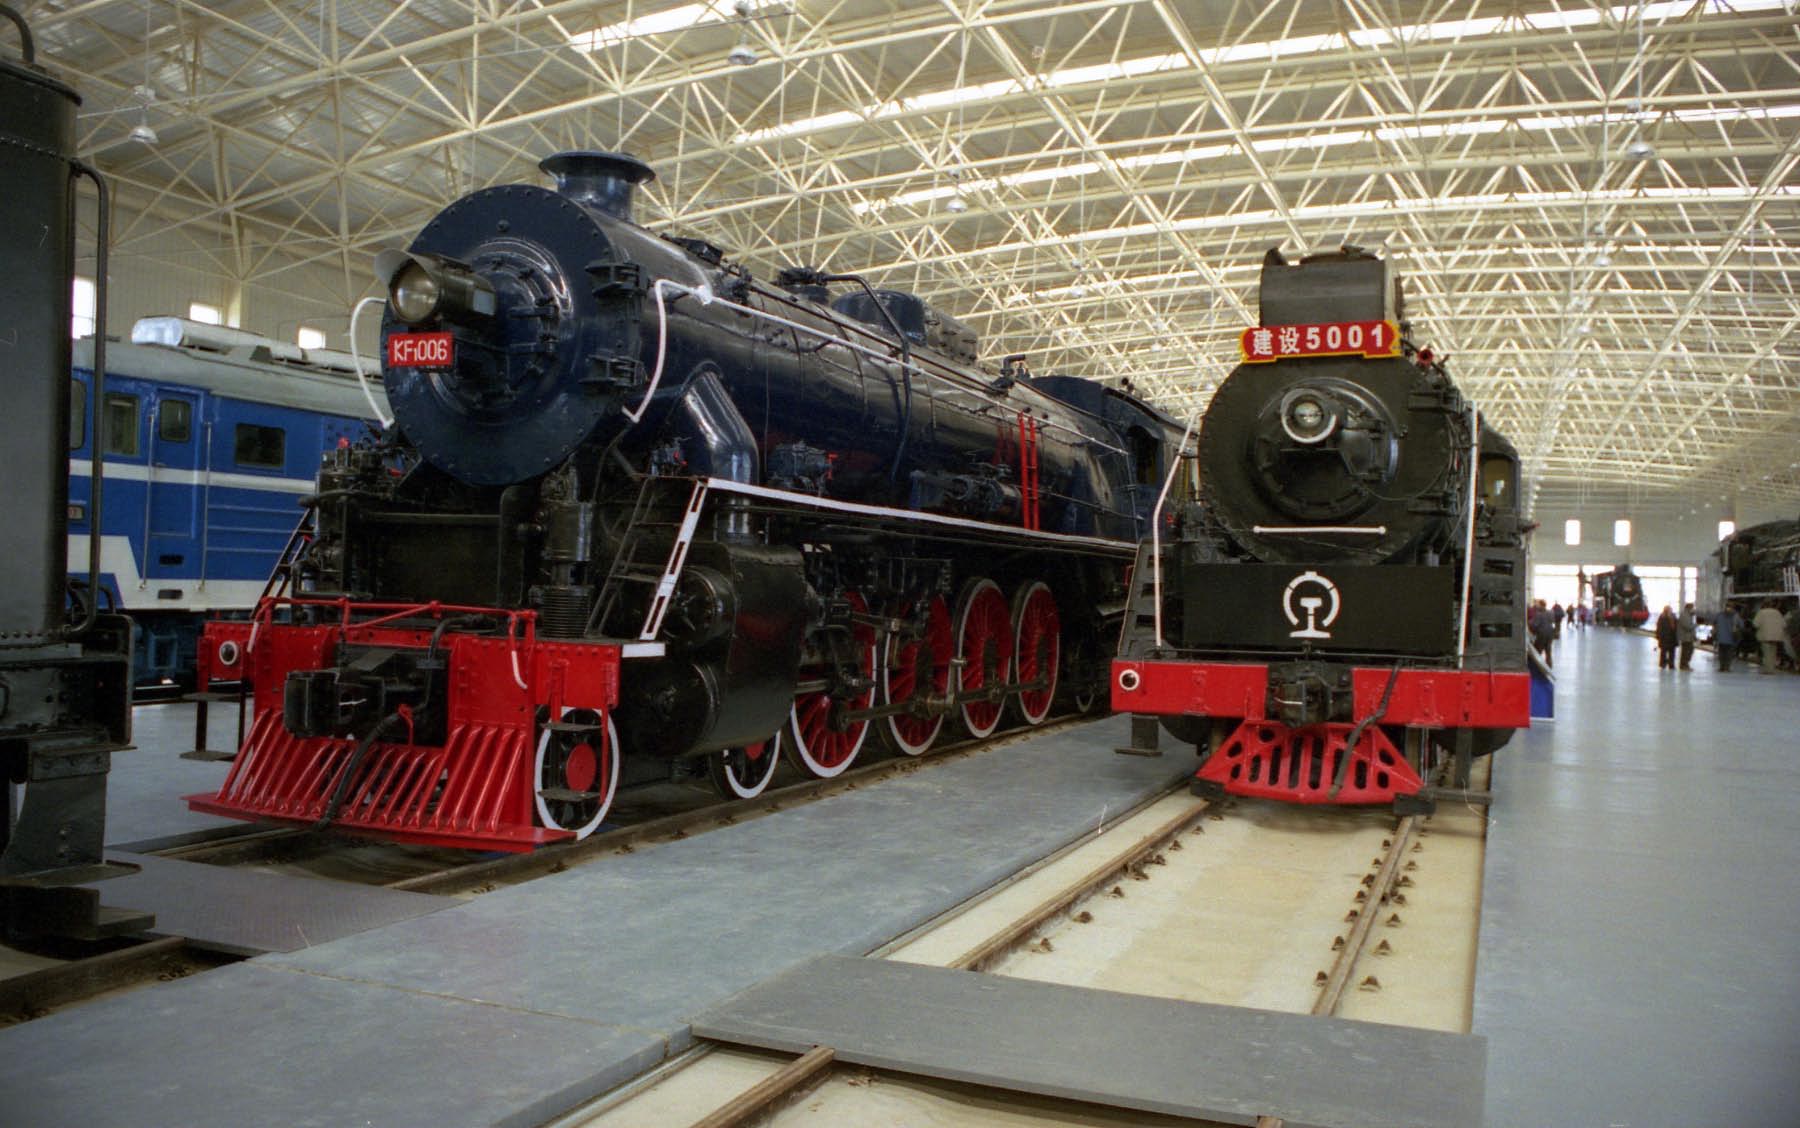 Exhibits inside the Beijing Railway Museum